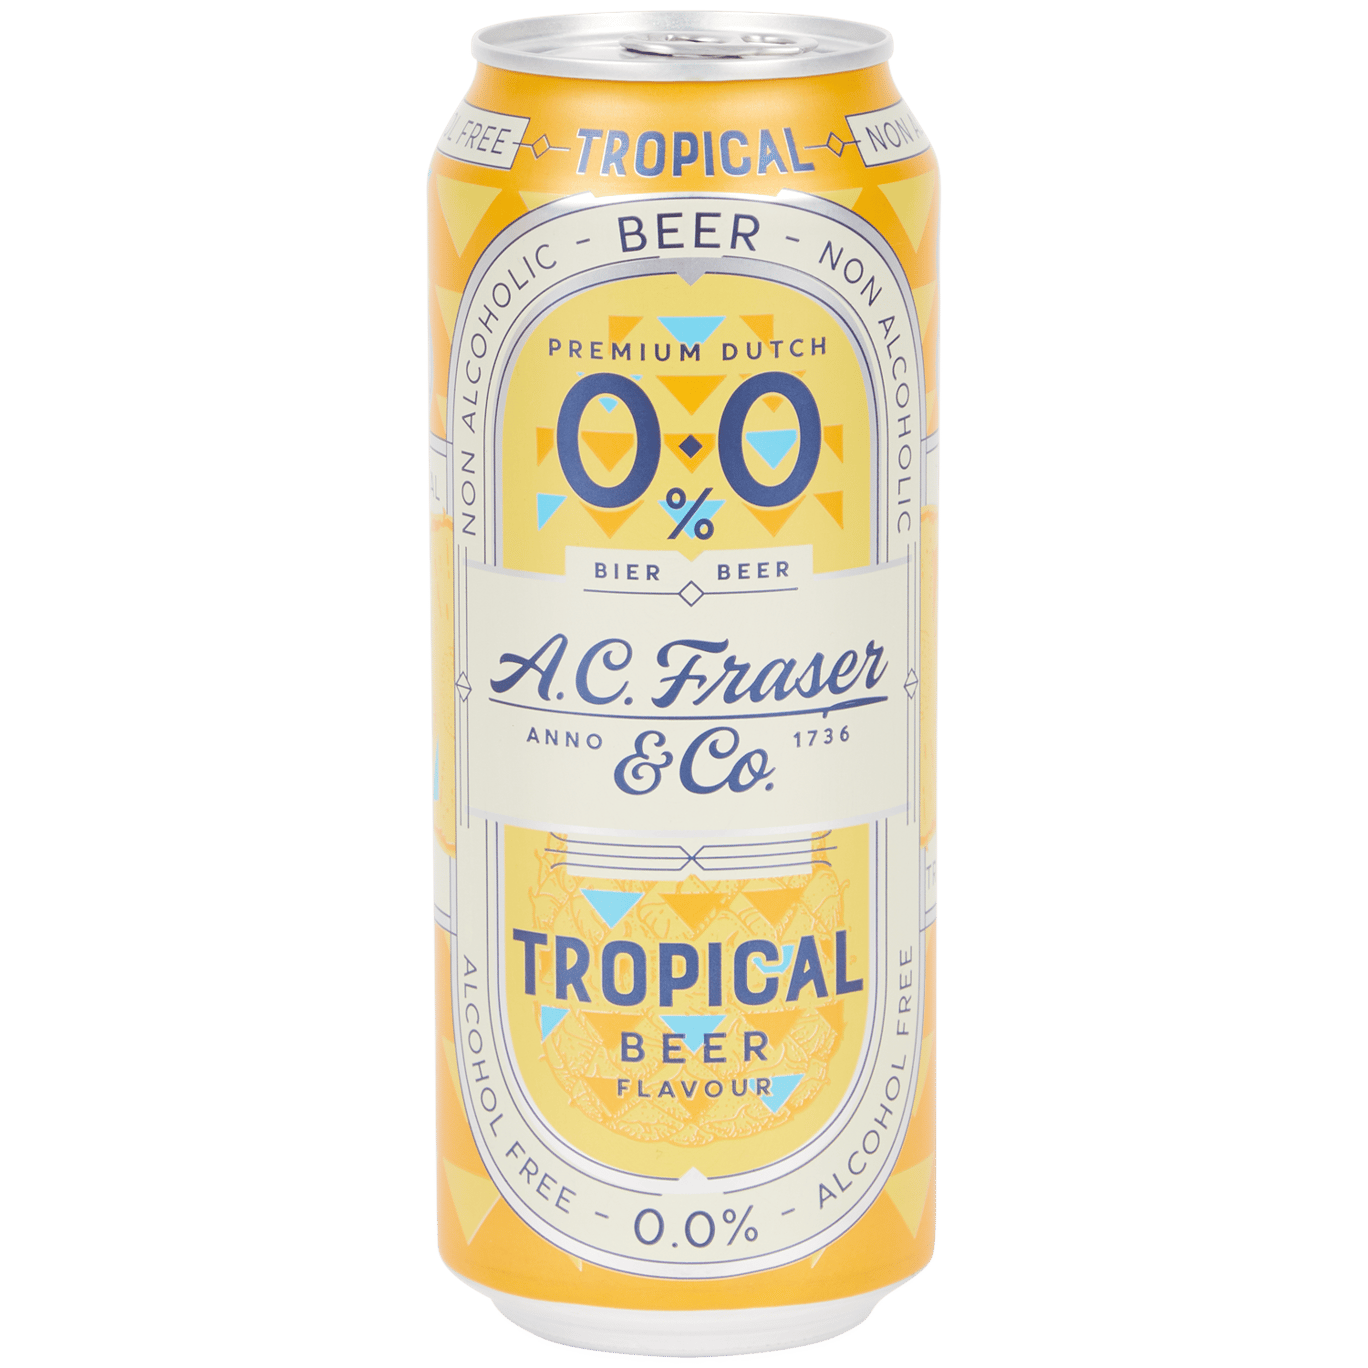 Cerveza A.C. Fraser & Co 0.0%